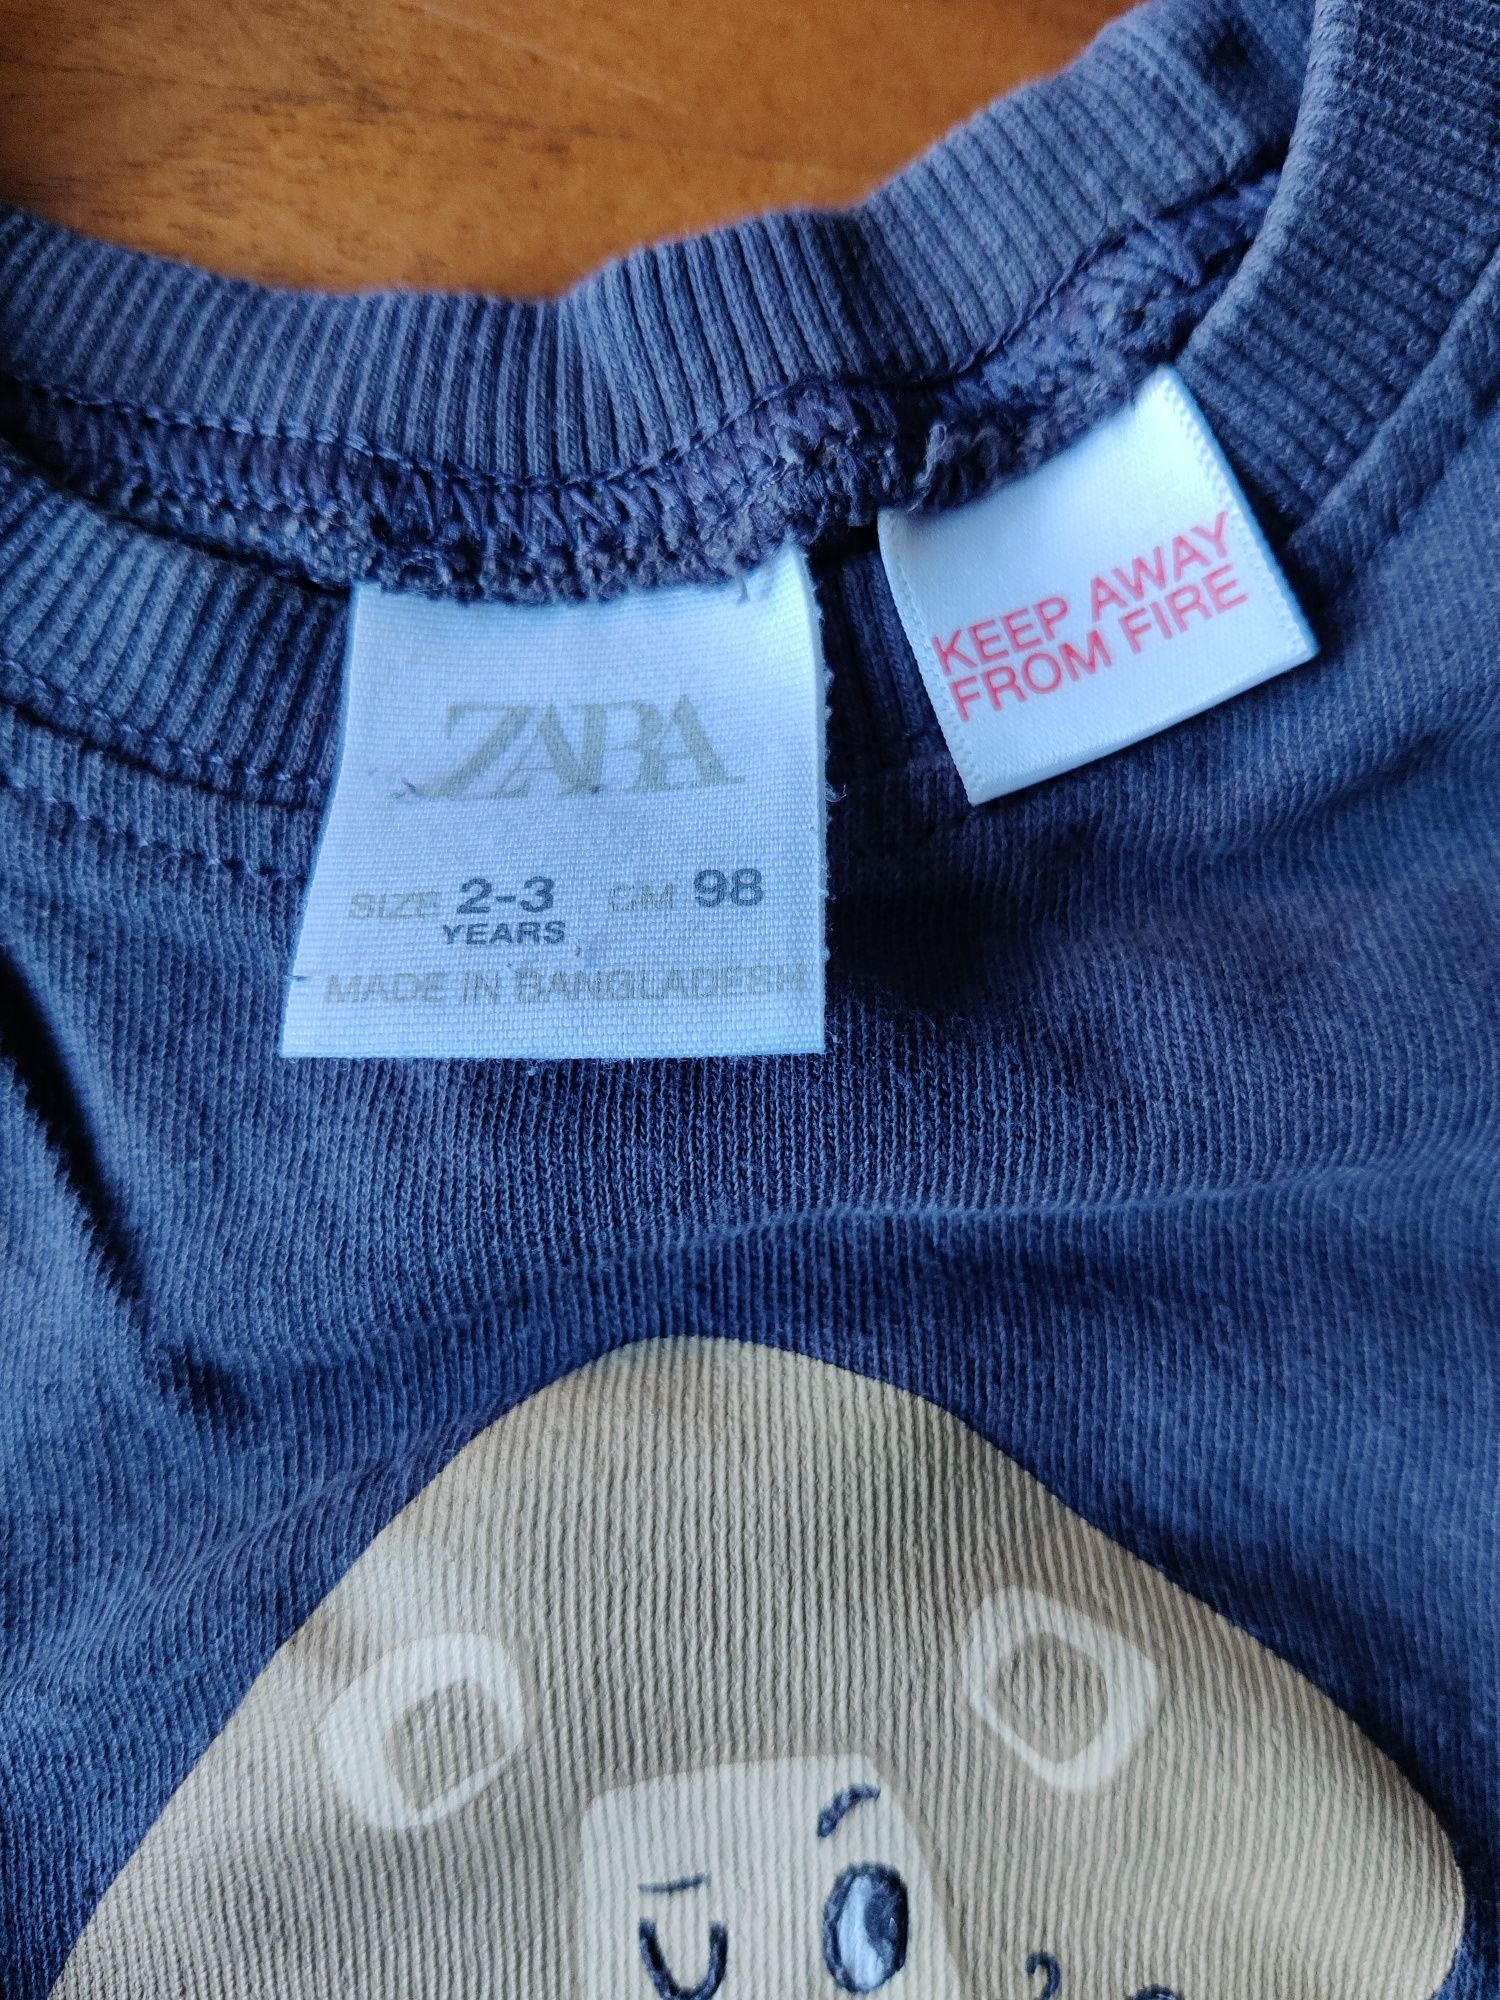 T-shirt manga comprida, cinzenta, Leão, Zara, 2/3 anos, 98 cm